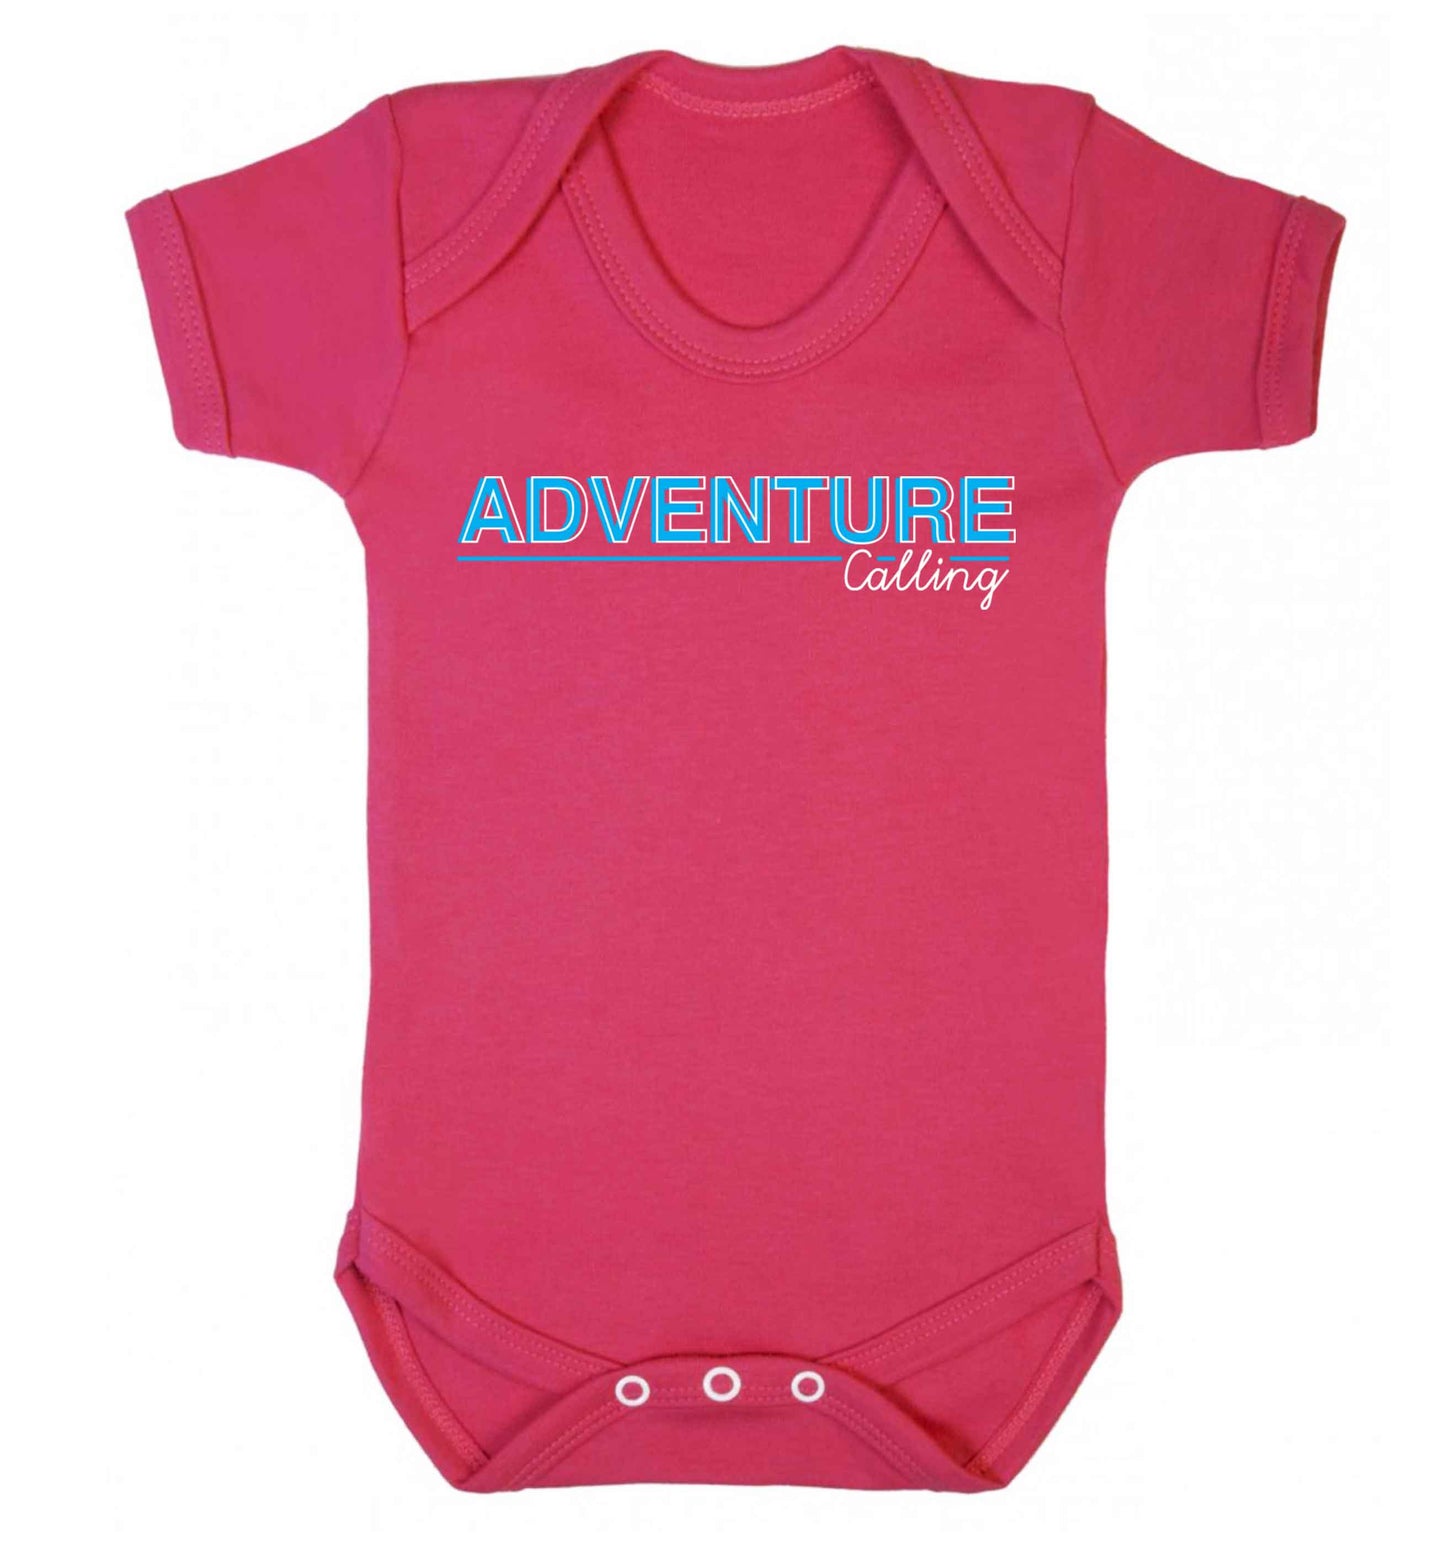 Adventure calling Baby Vest dark pink 18-24 months